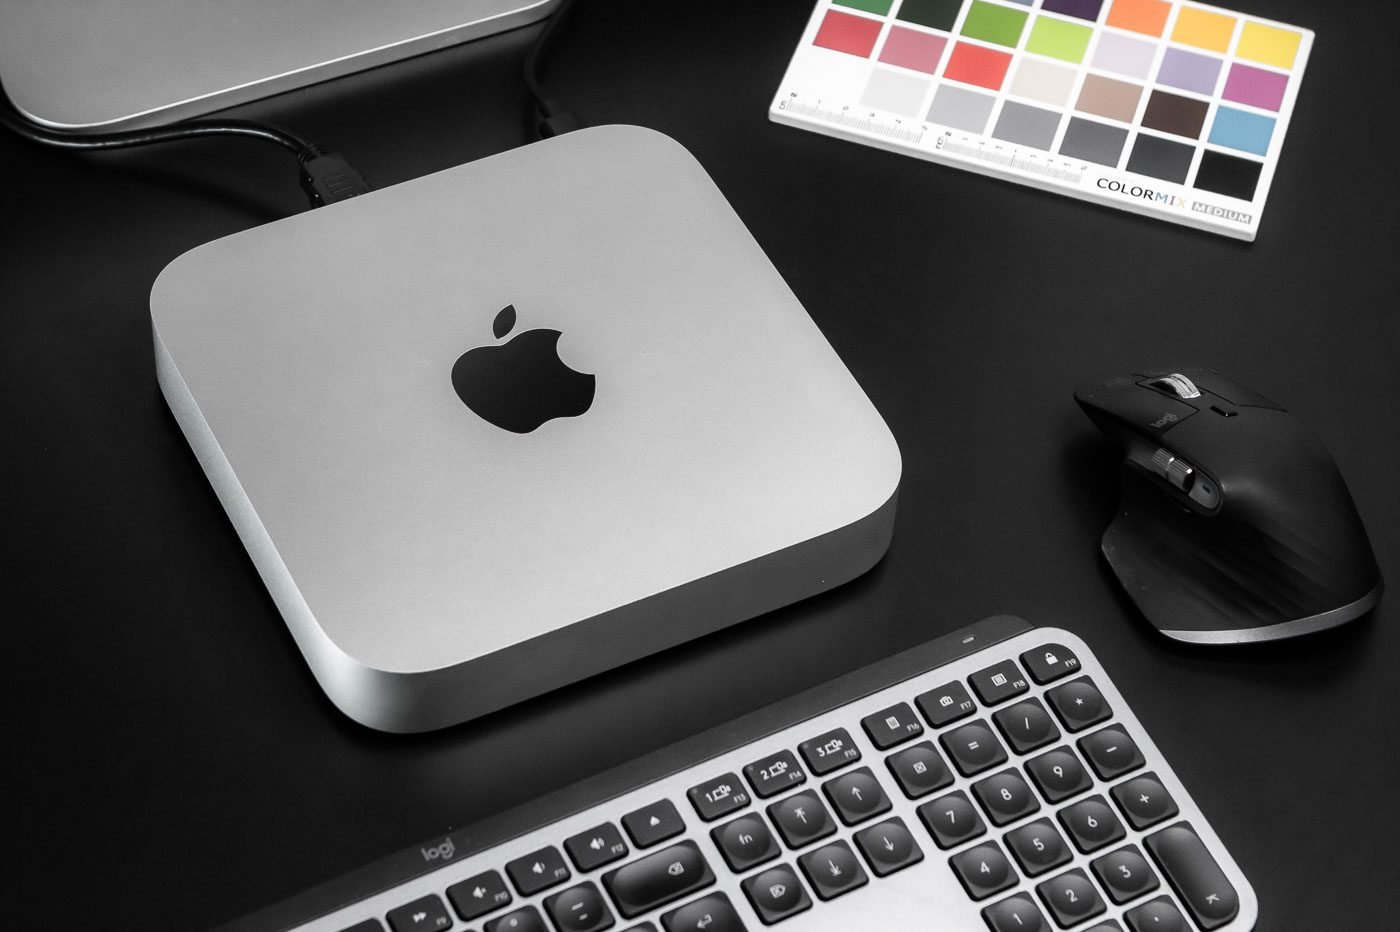 Le Mac mini est toujours livré sans souris ni clavier, par défaut.